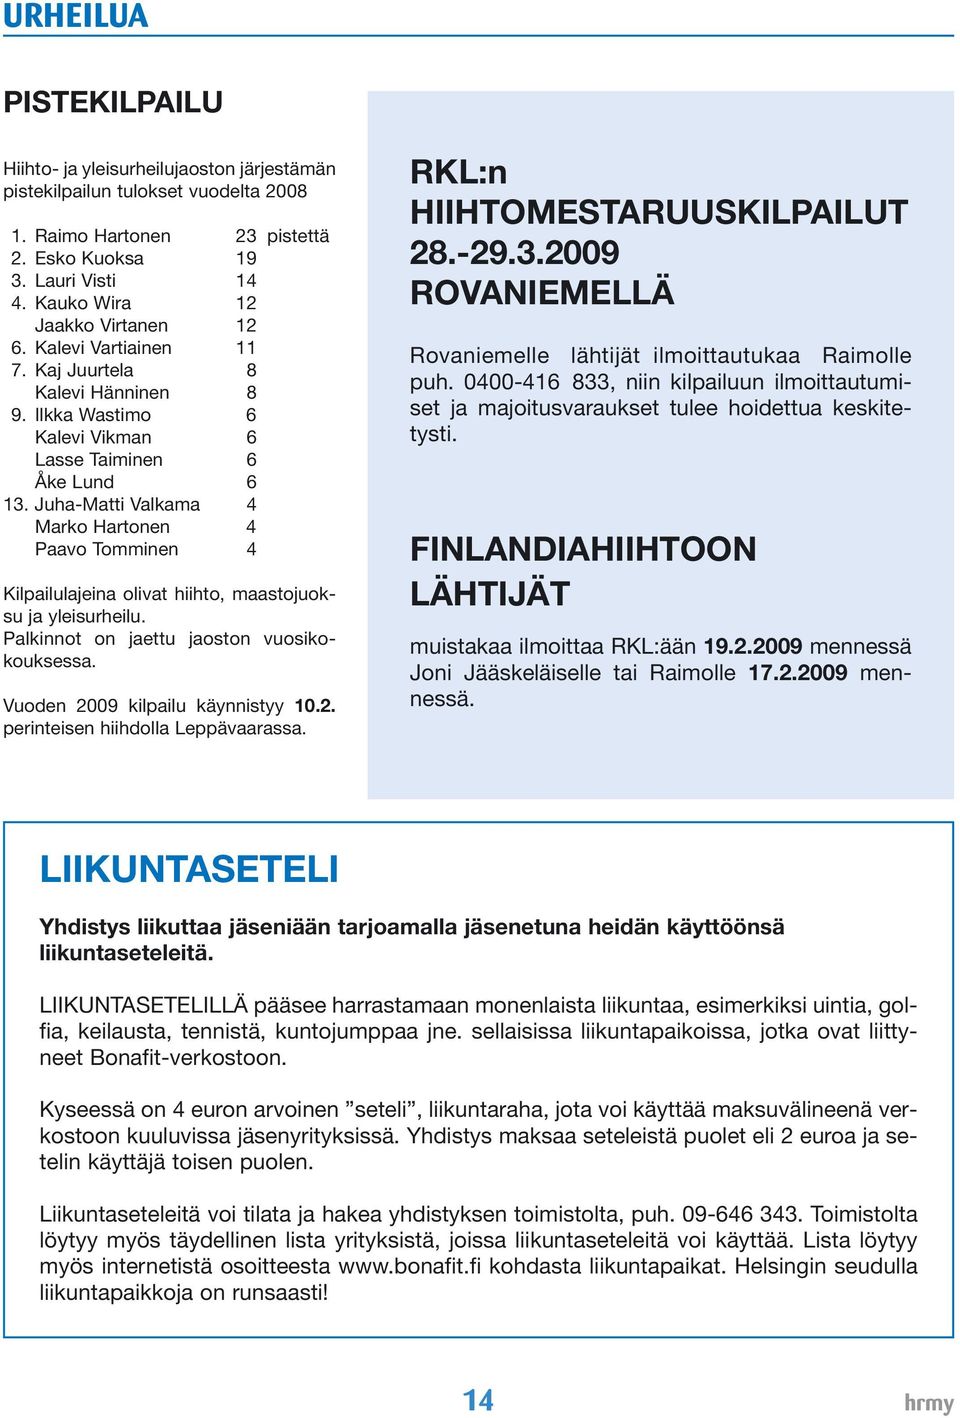 Juha-Matti Valkama 4 Marko Hartonen 4 Paavo Tomminen 4 Kilpailulajeina olivat hiihto, maastojuoksu ja yleisurheilu. Palkinnot on jaettu jaoston vuosikokouksessa. Vuoden 20